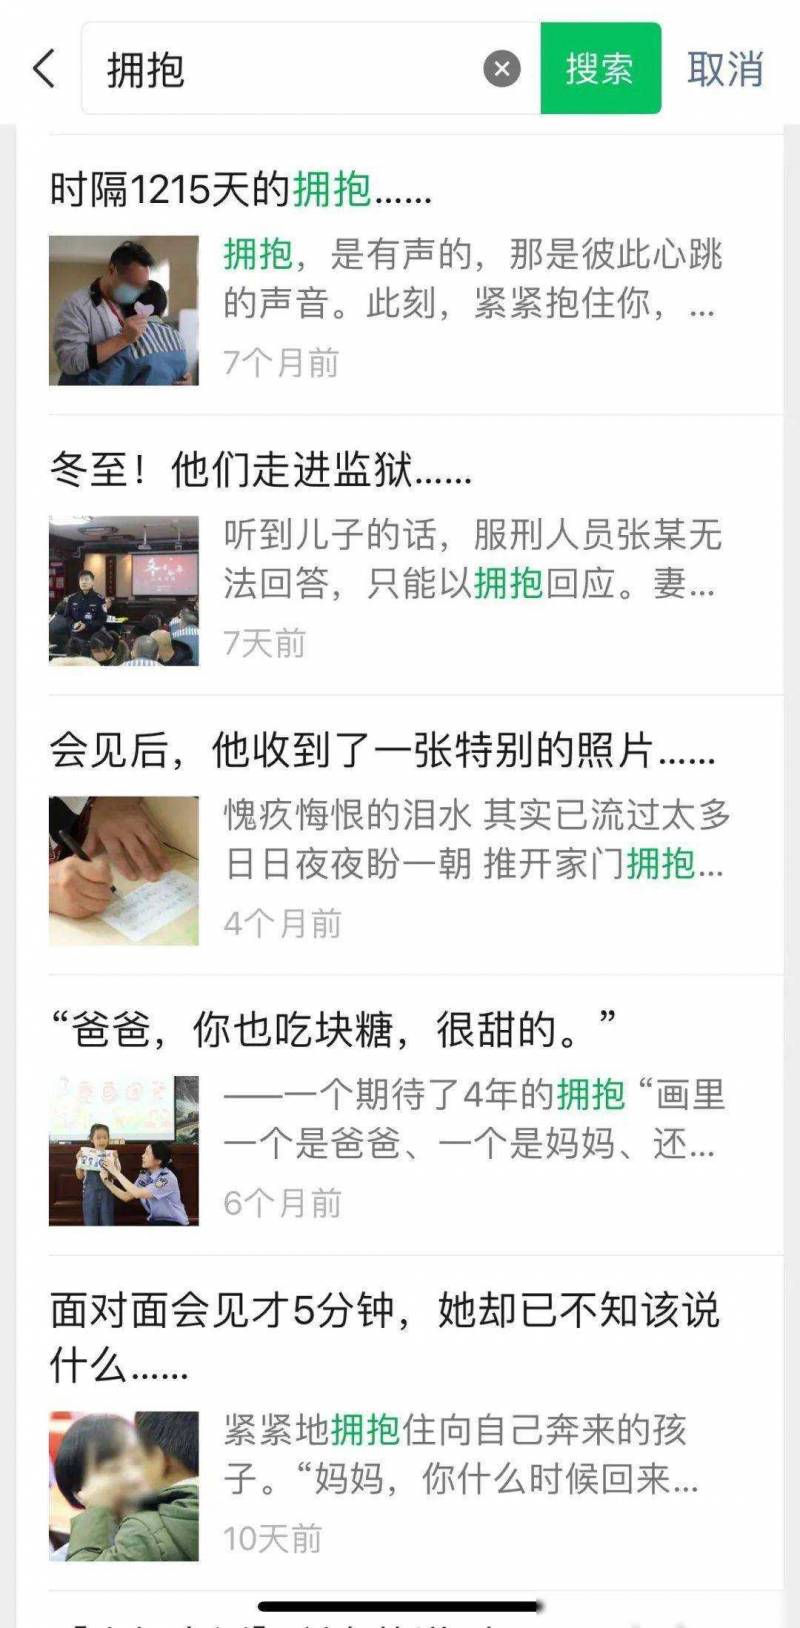 江苏监狱的微博视频揭示了监狱系统如何通过新媒体与公众沟通。